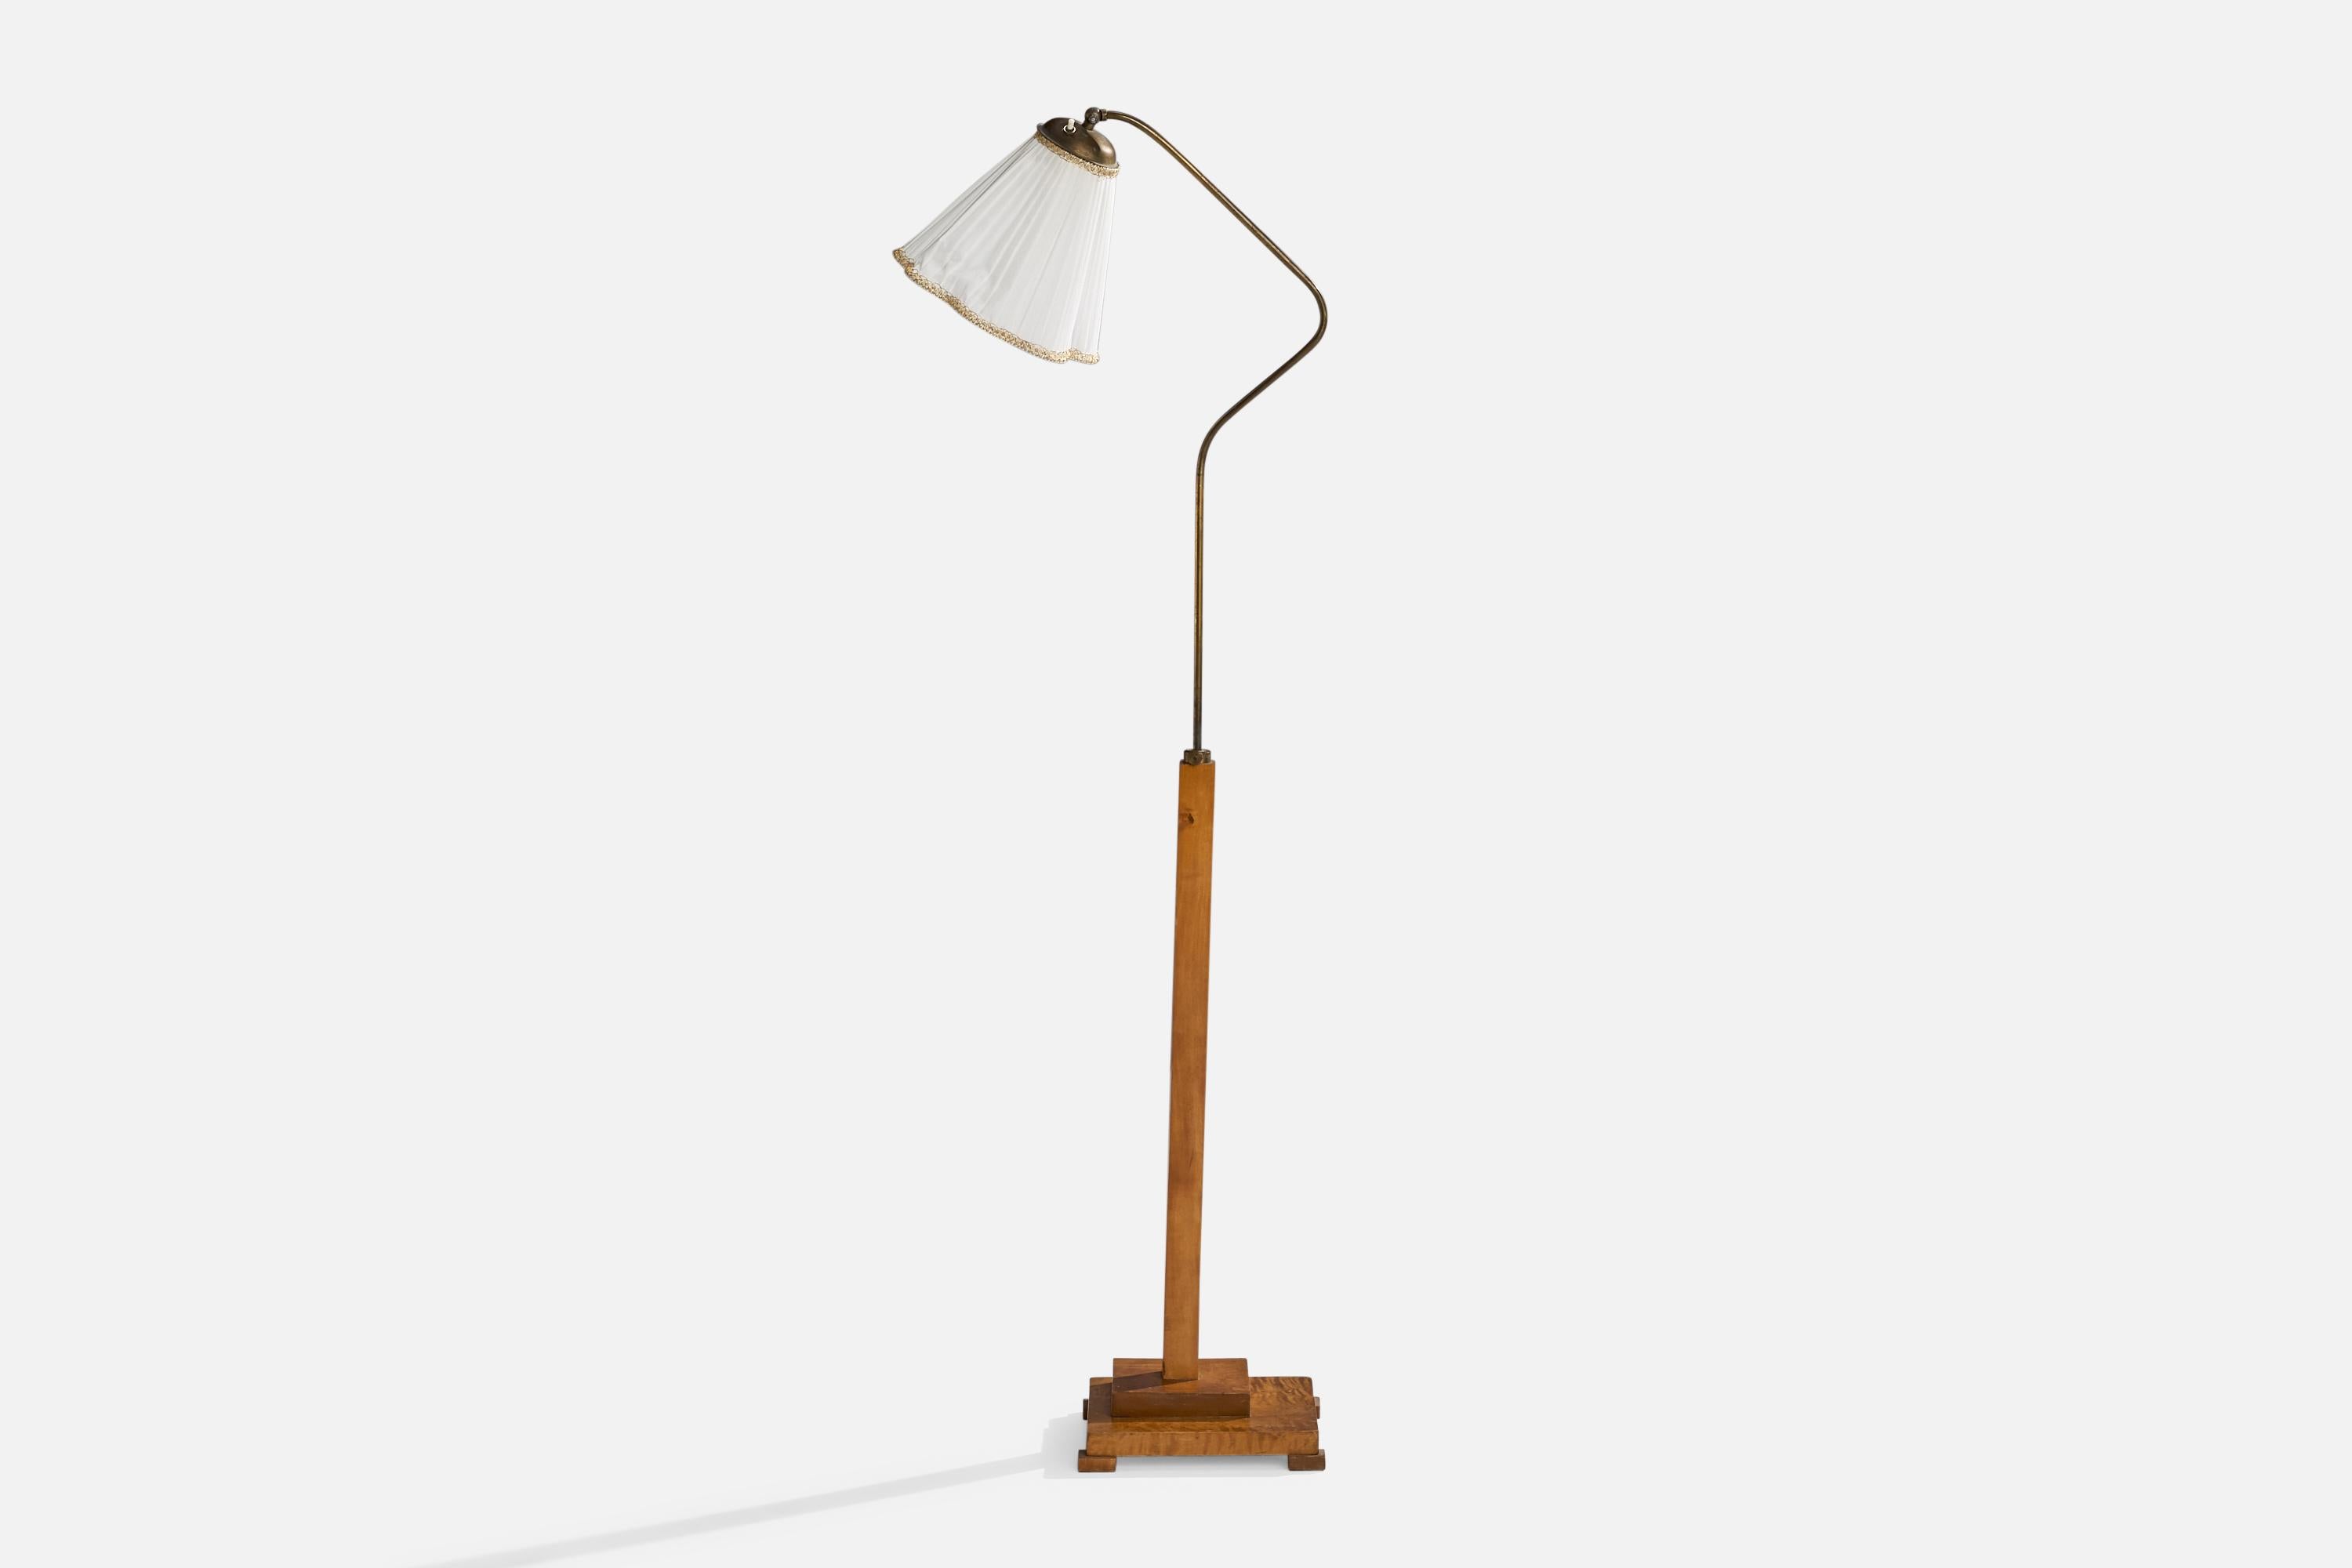 Eine Stehlampe aus Messing, Birke und weißem Stoff, entworfen und hergestellt in Schweden, 1930er Jahre.

Gesamtabmessungen (Zoll): 57,5